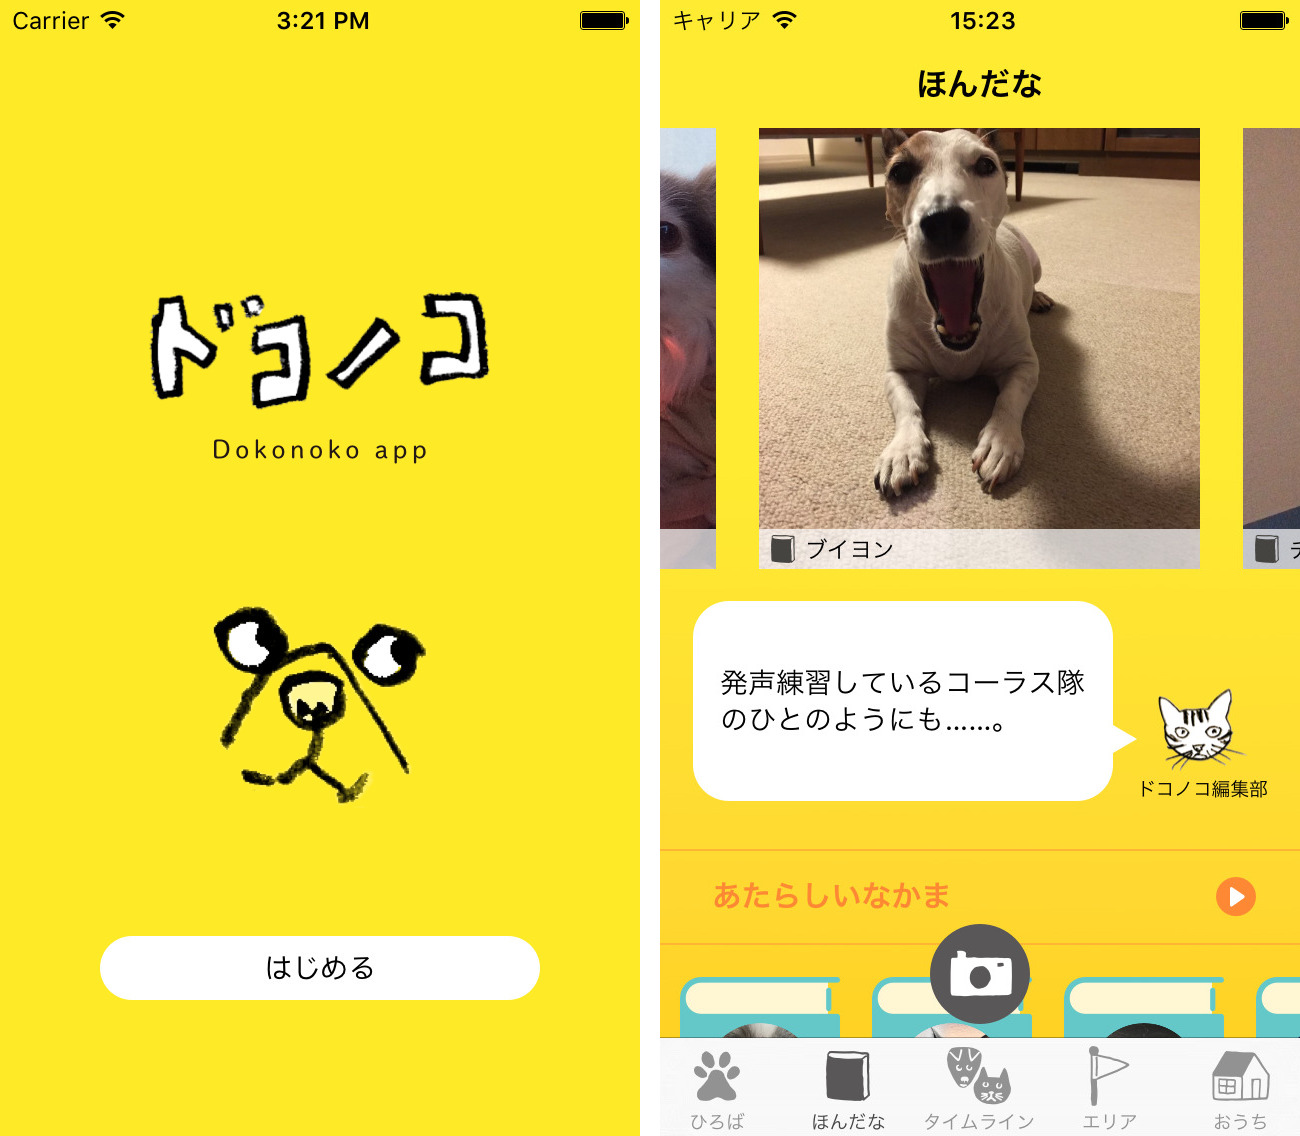 ほぼ日から犬や猫と人が親しくなるためのアプリ ドコノコ デビュー Ios版アプリが公開 ソフトアンテナブログ